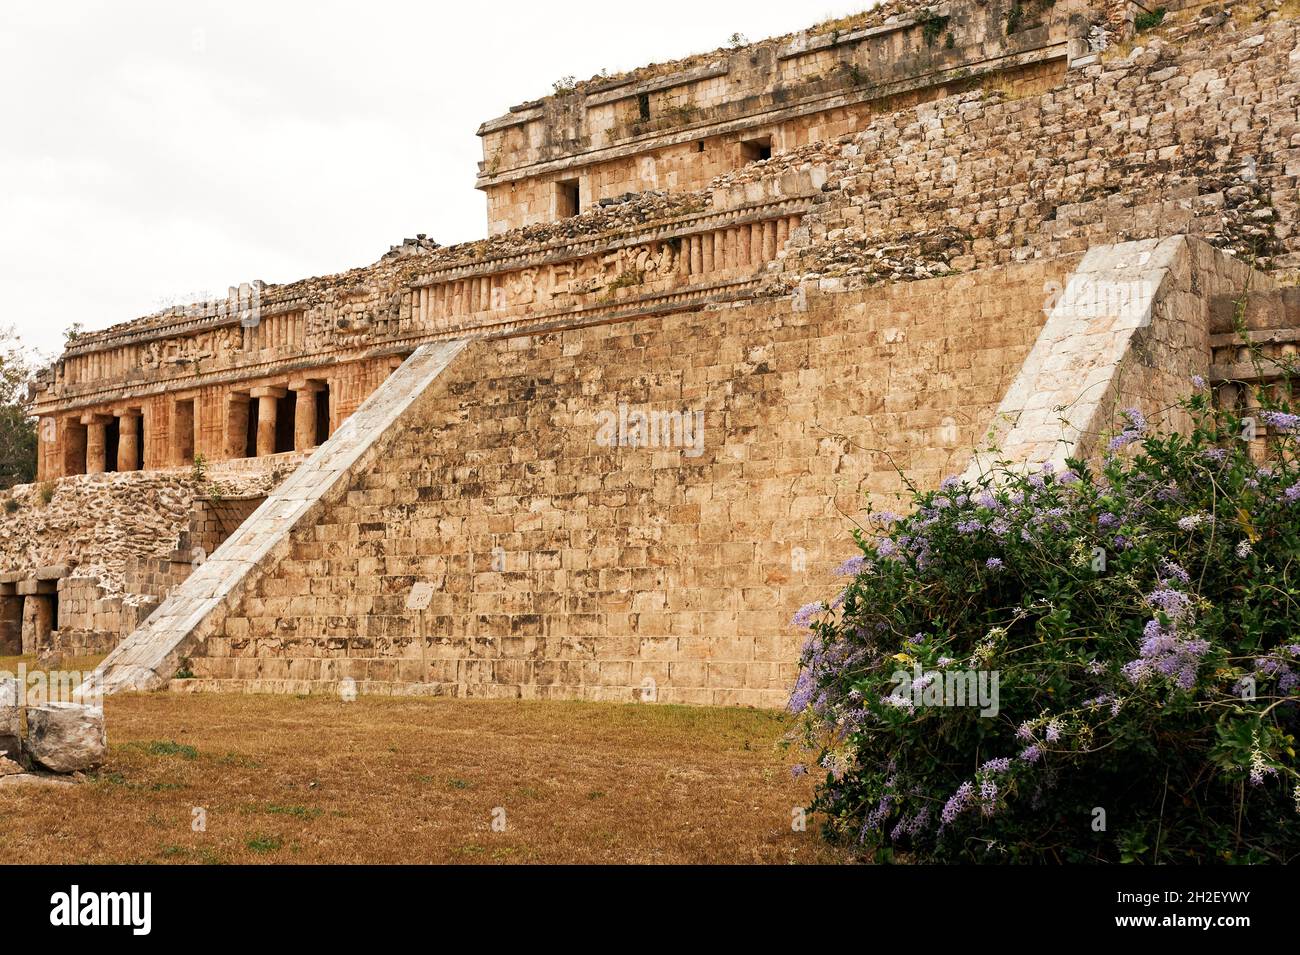 The Palace or El Palacio at the Mayan ruins of Sayil, Puuc Route, Yucatan, Mexico Stock Photo